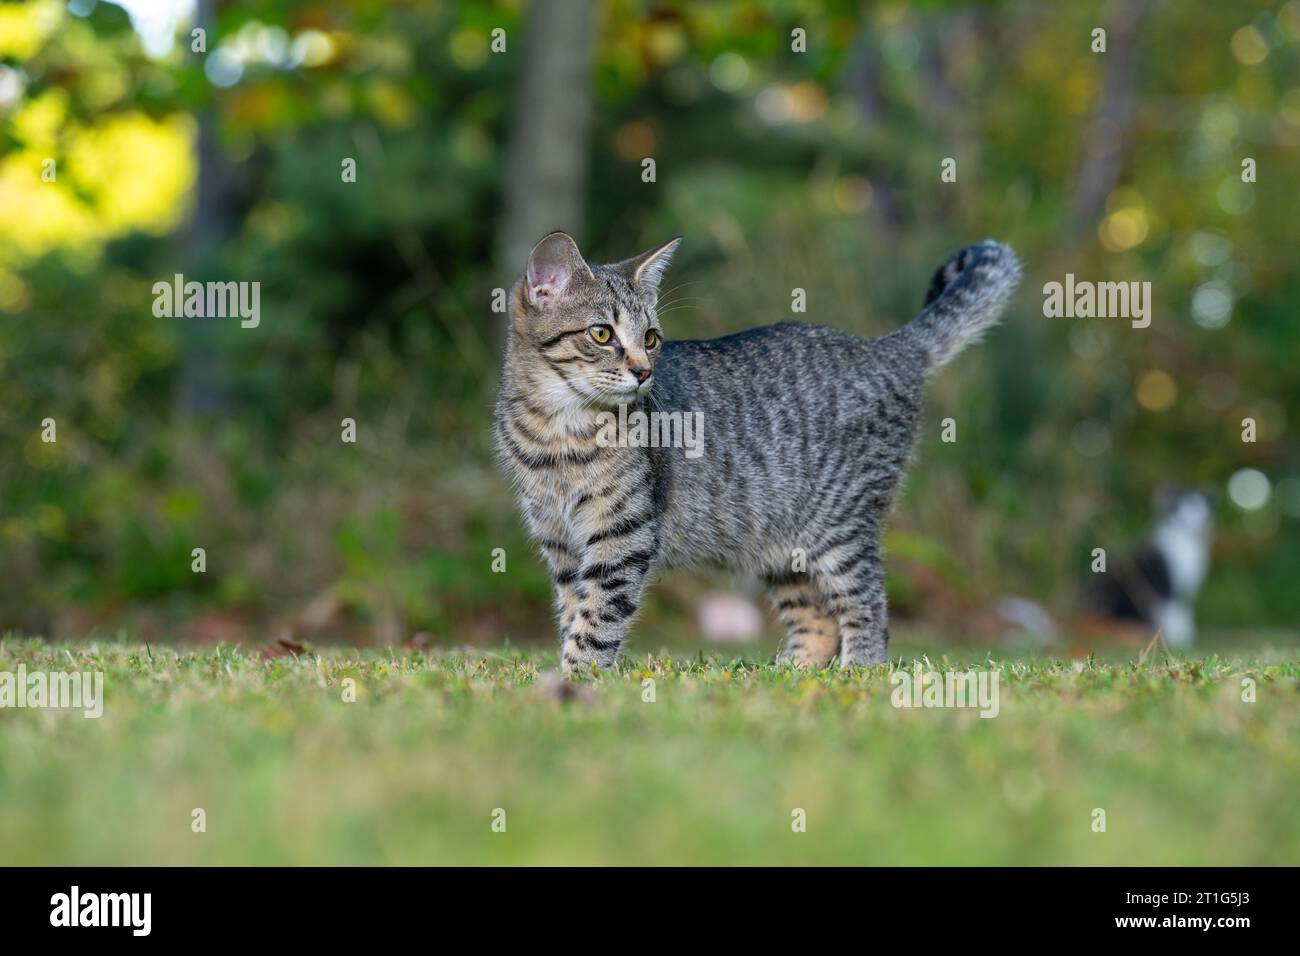 Gato tabby lindo de pie en un patio abierto con árboles y otros gatos en el fondo Foto de stock